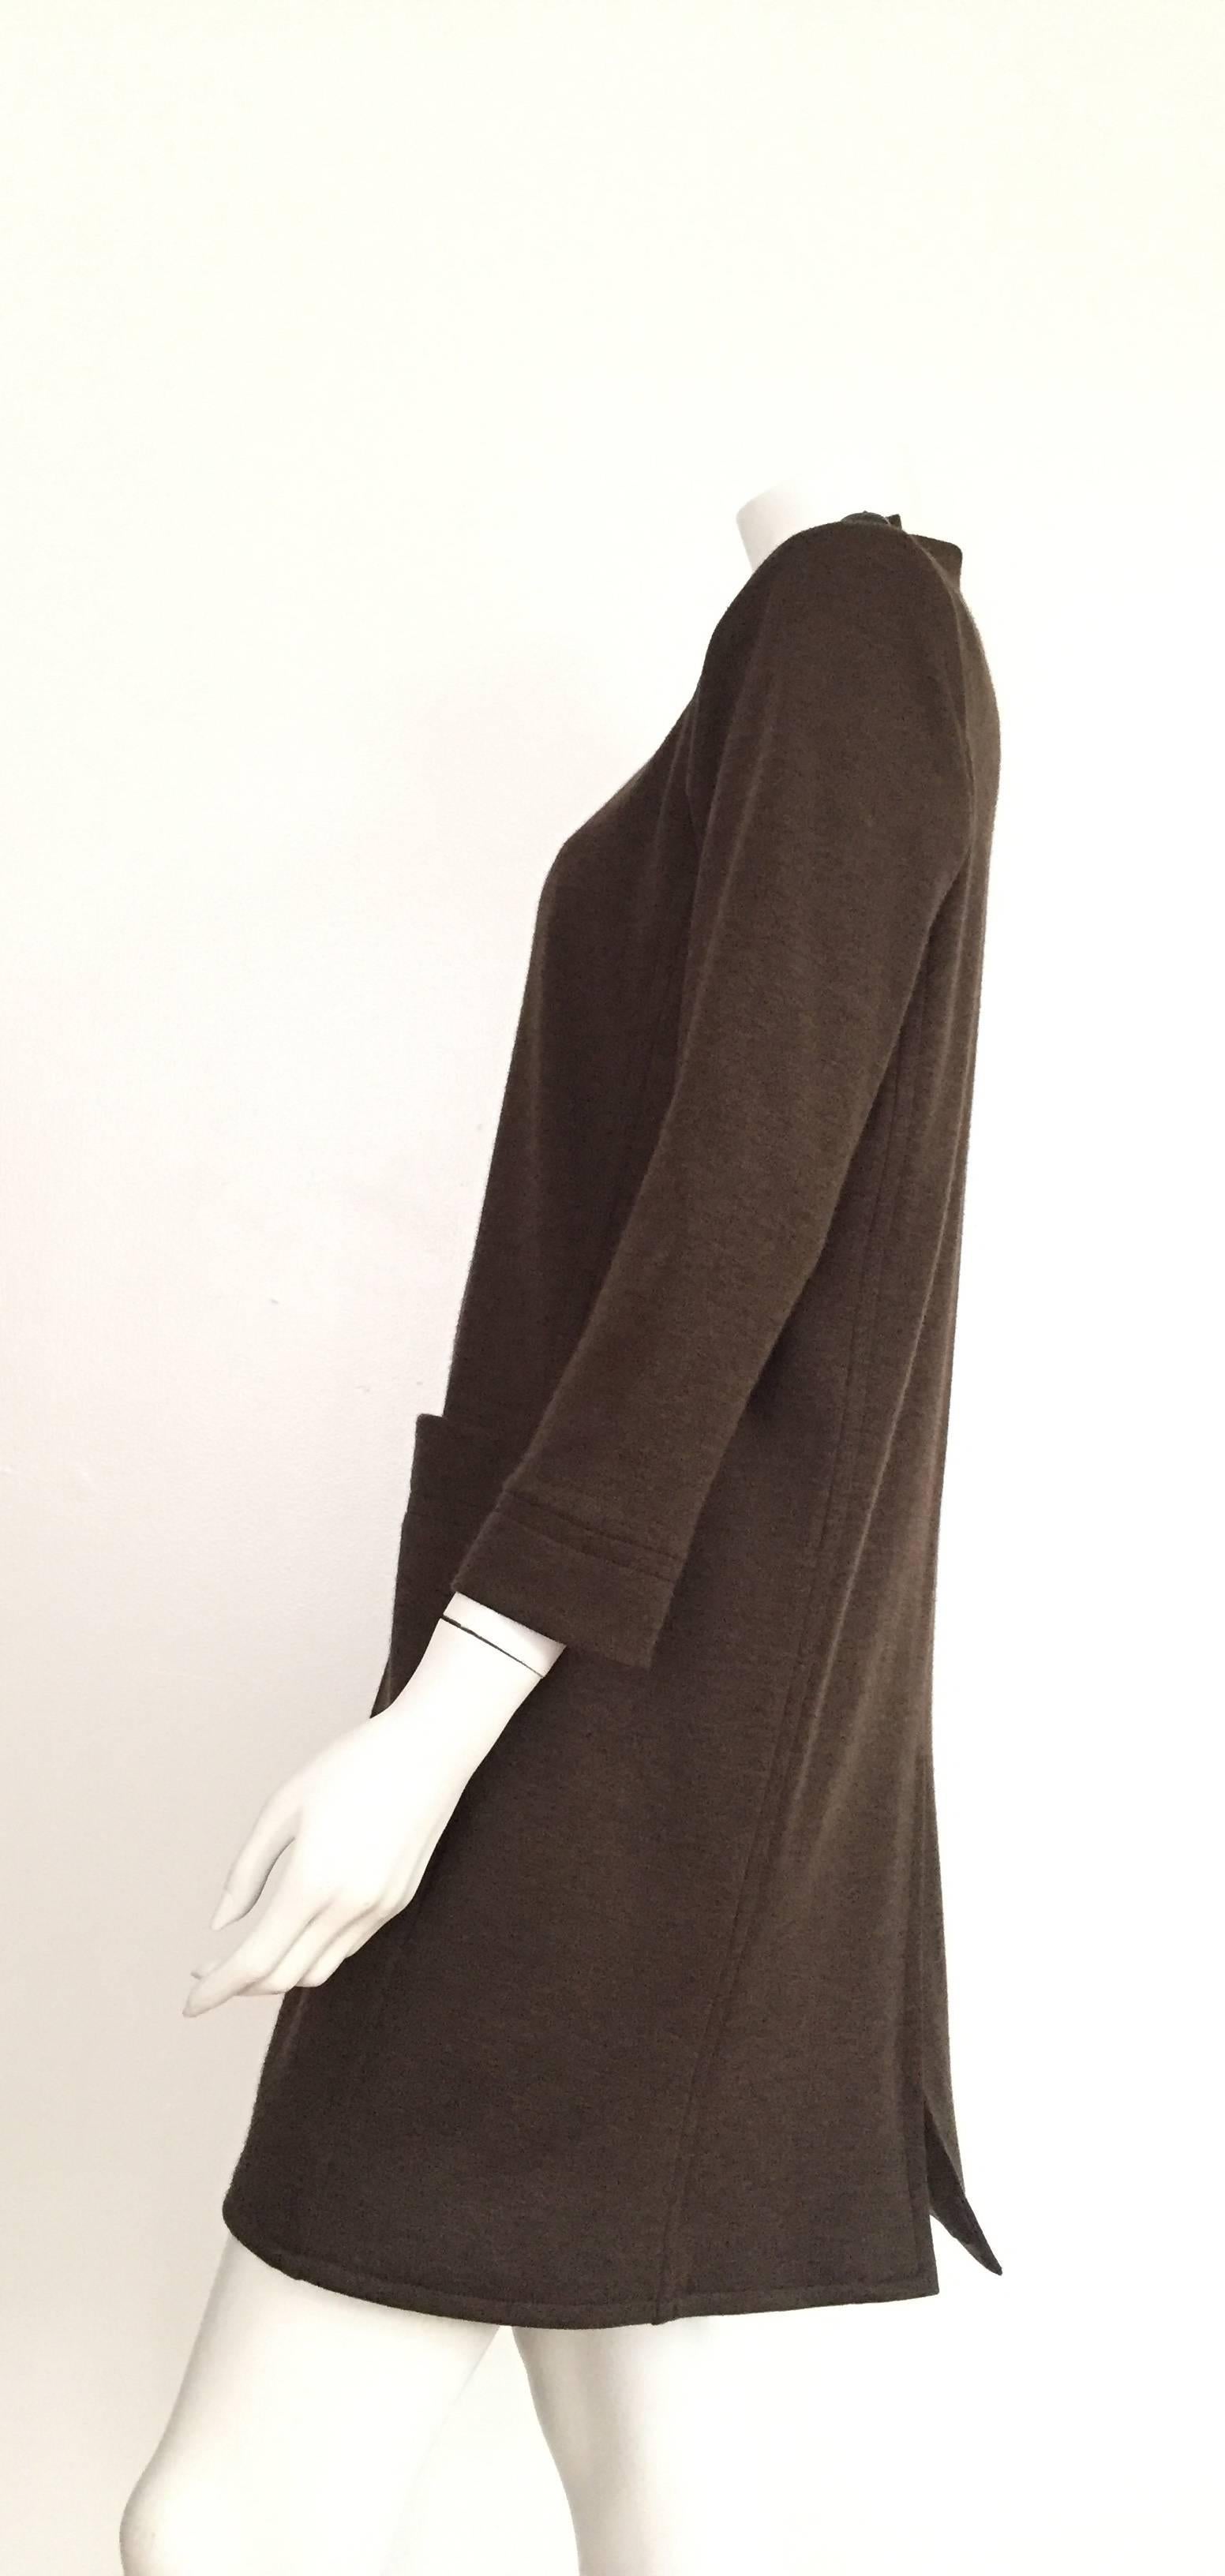 Yves Saint Laurent Rive Gauche Size 6 - 8 Cashmere Olive MOD Dress, 1990s  For Sale 2